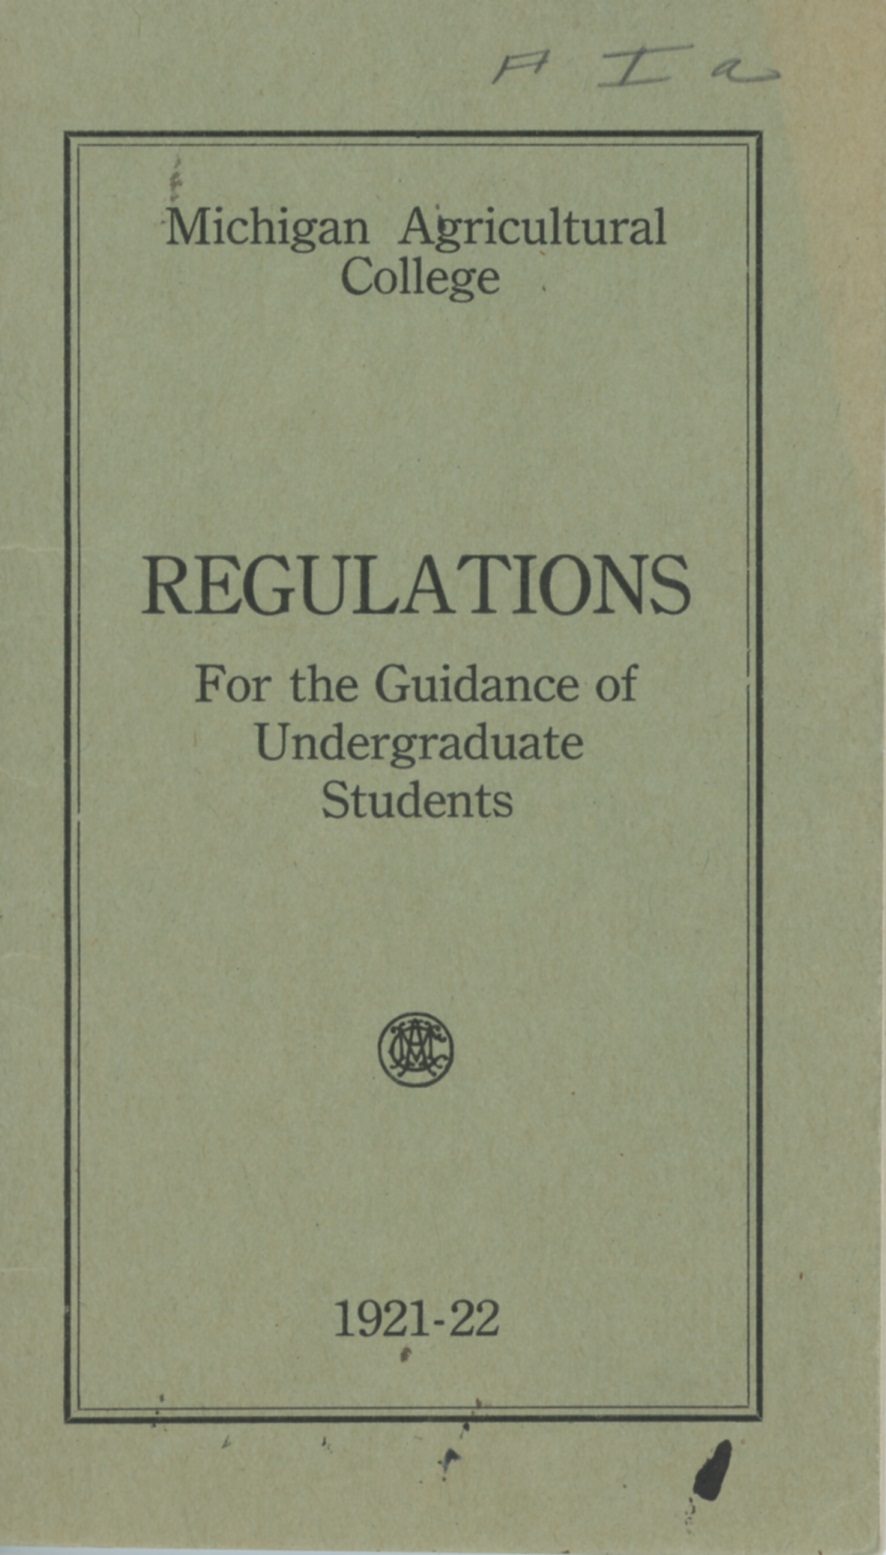 Student Handbook, 1921-1922